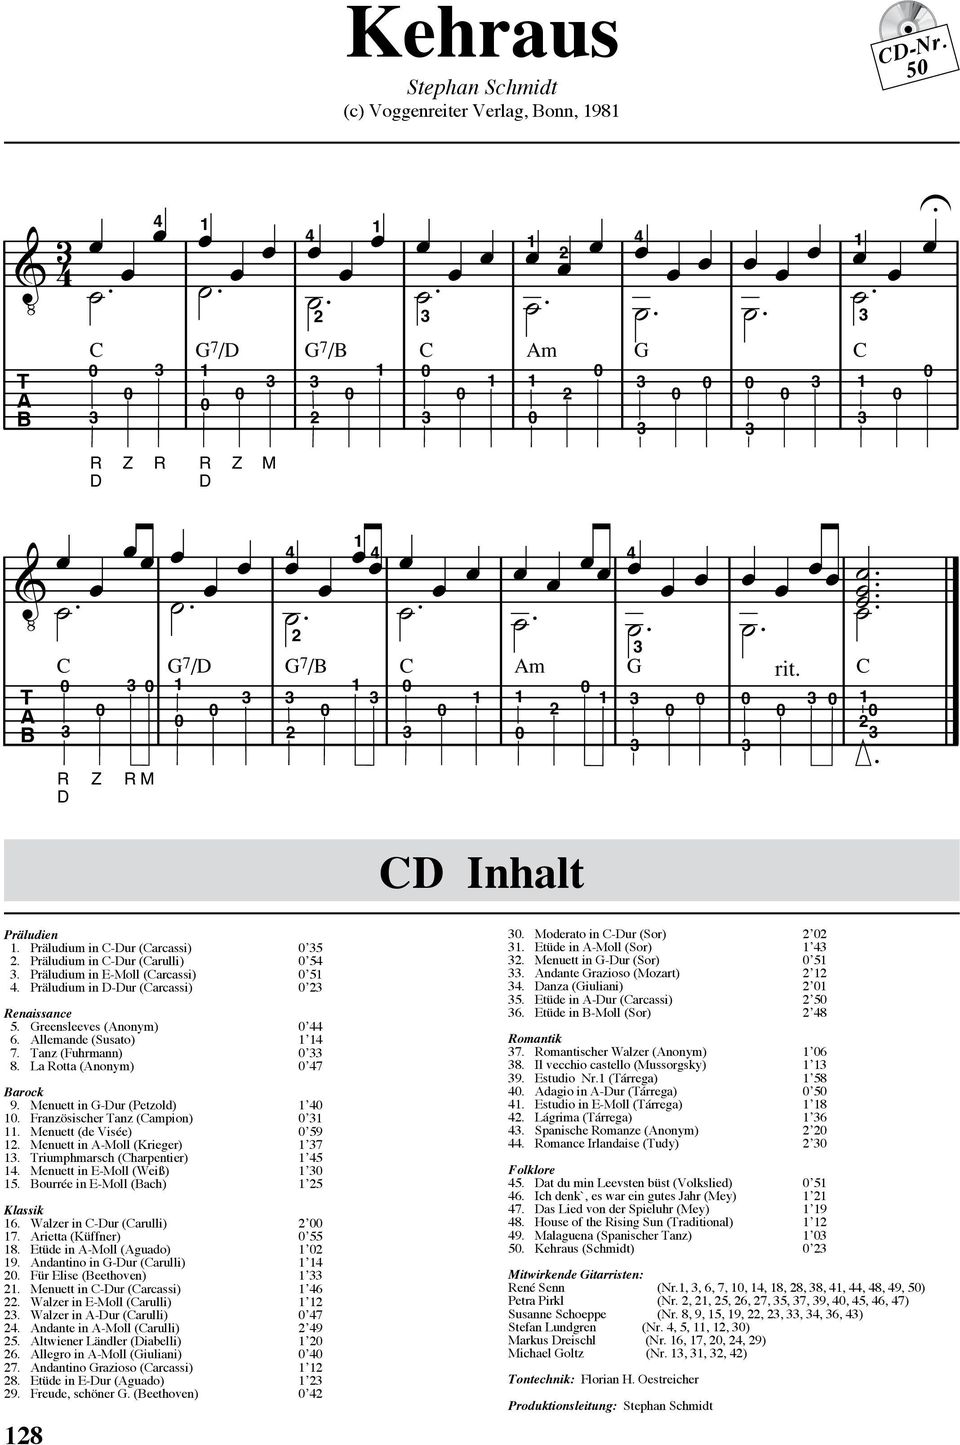 Menuett in G-ur (Petzold) 4. Französischer Tanz (ampion). Menuett (de Visée) 59. Menuett in A-Moll (Krieger) 7. Triumphmarsch (harpentier) 45 4. Menuett in E-Moll (Weiß) 5.